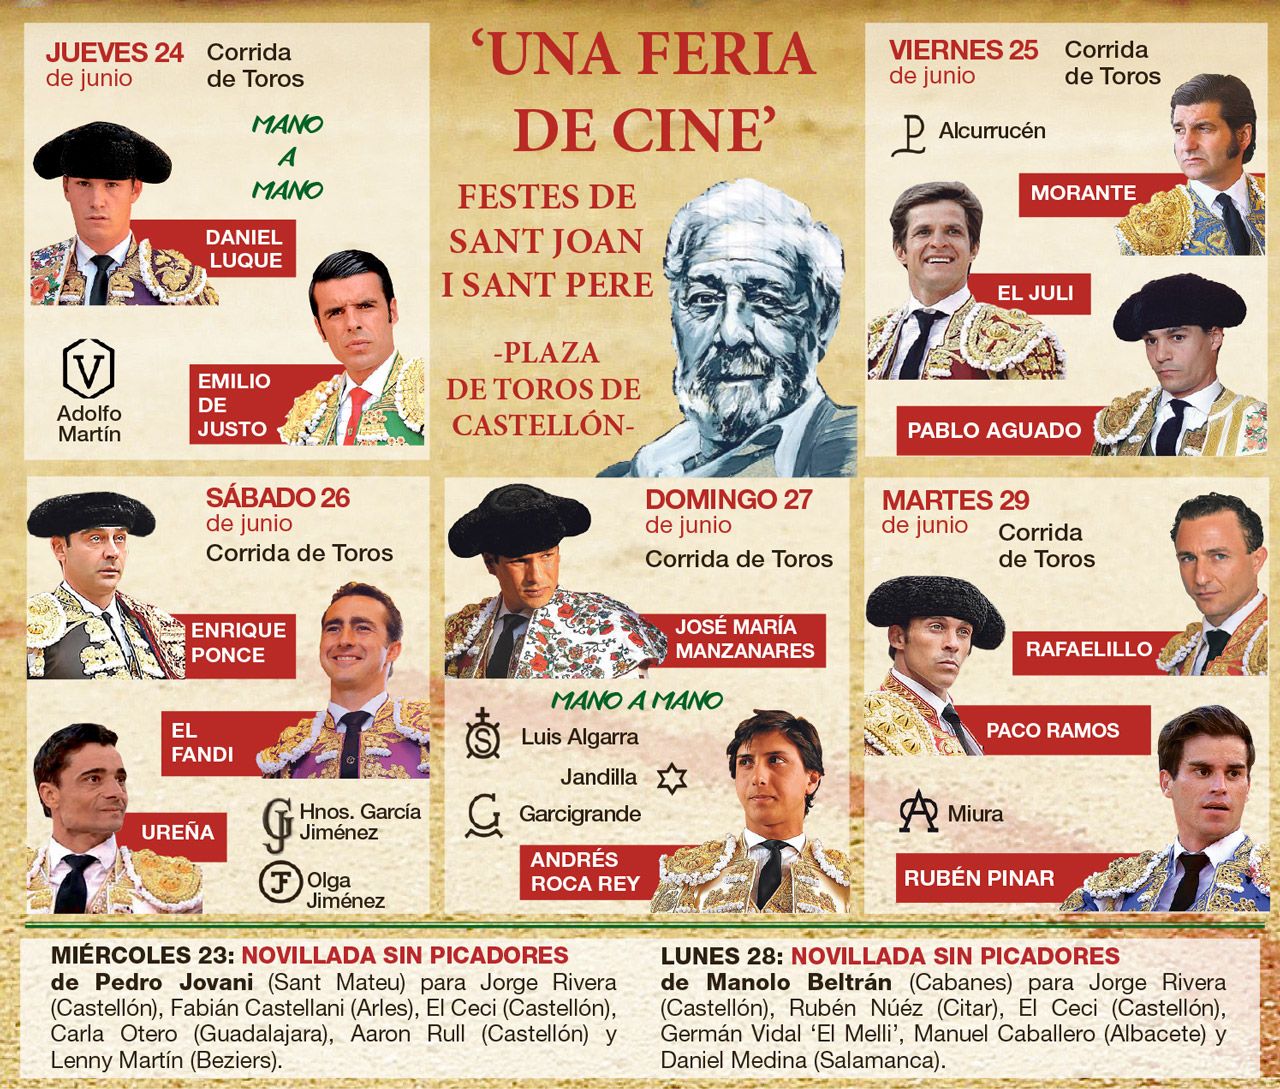 Cartel completo de la Feria de cine con todas las figuras del toreo y las ganaderías del momento.